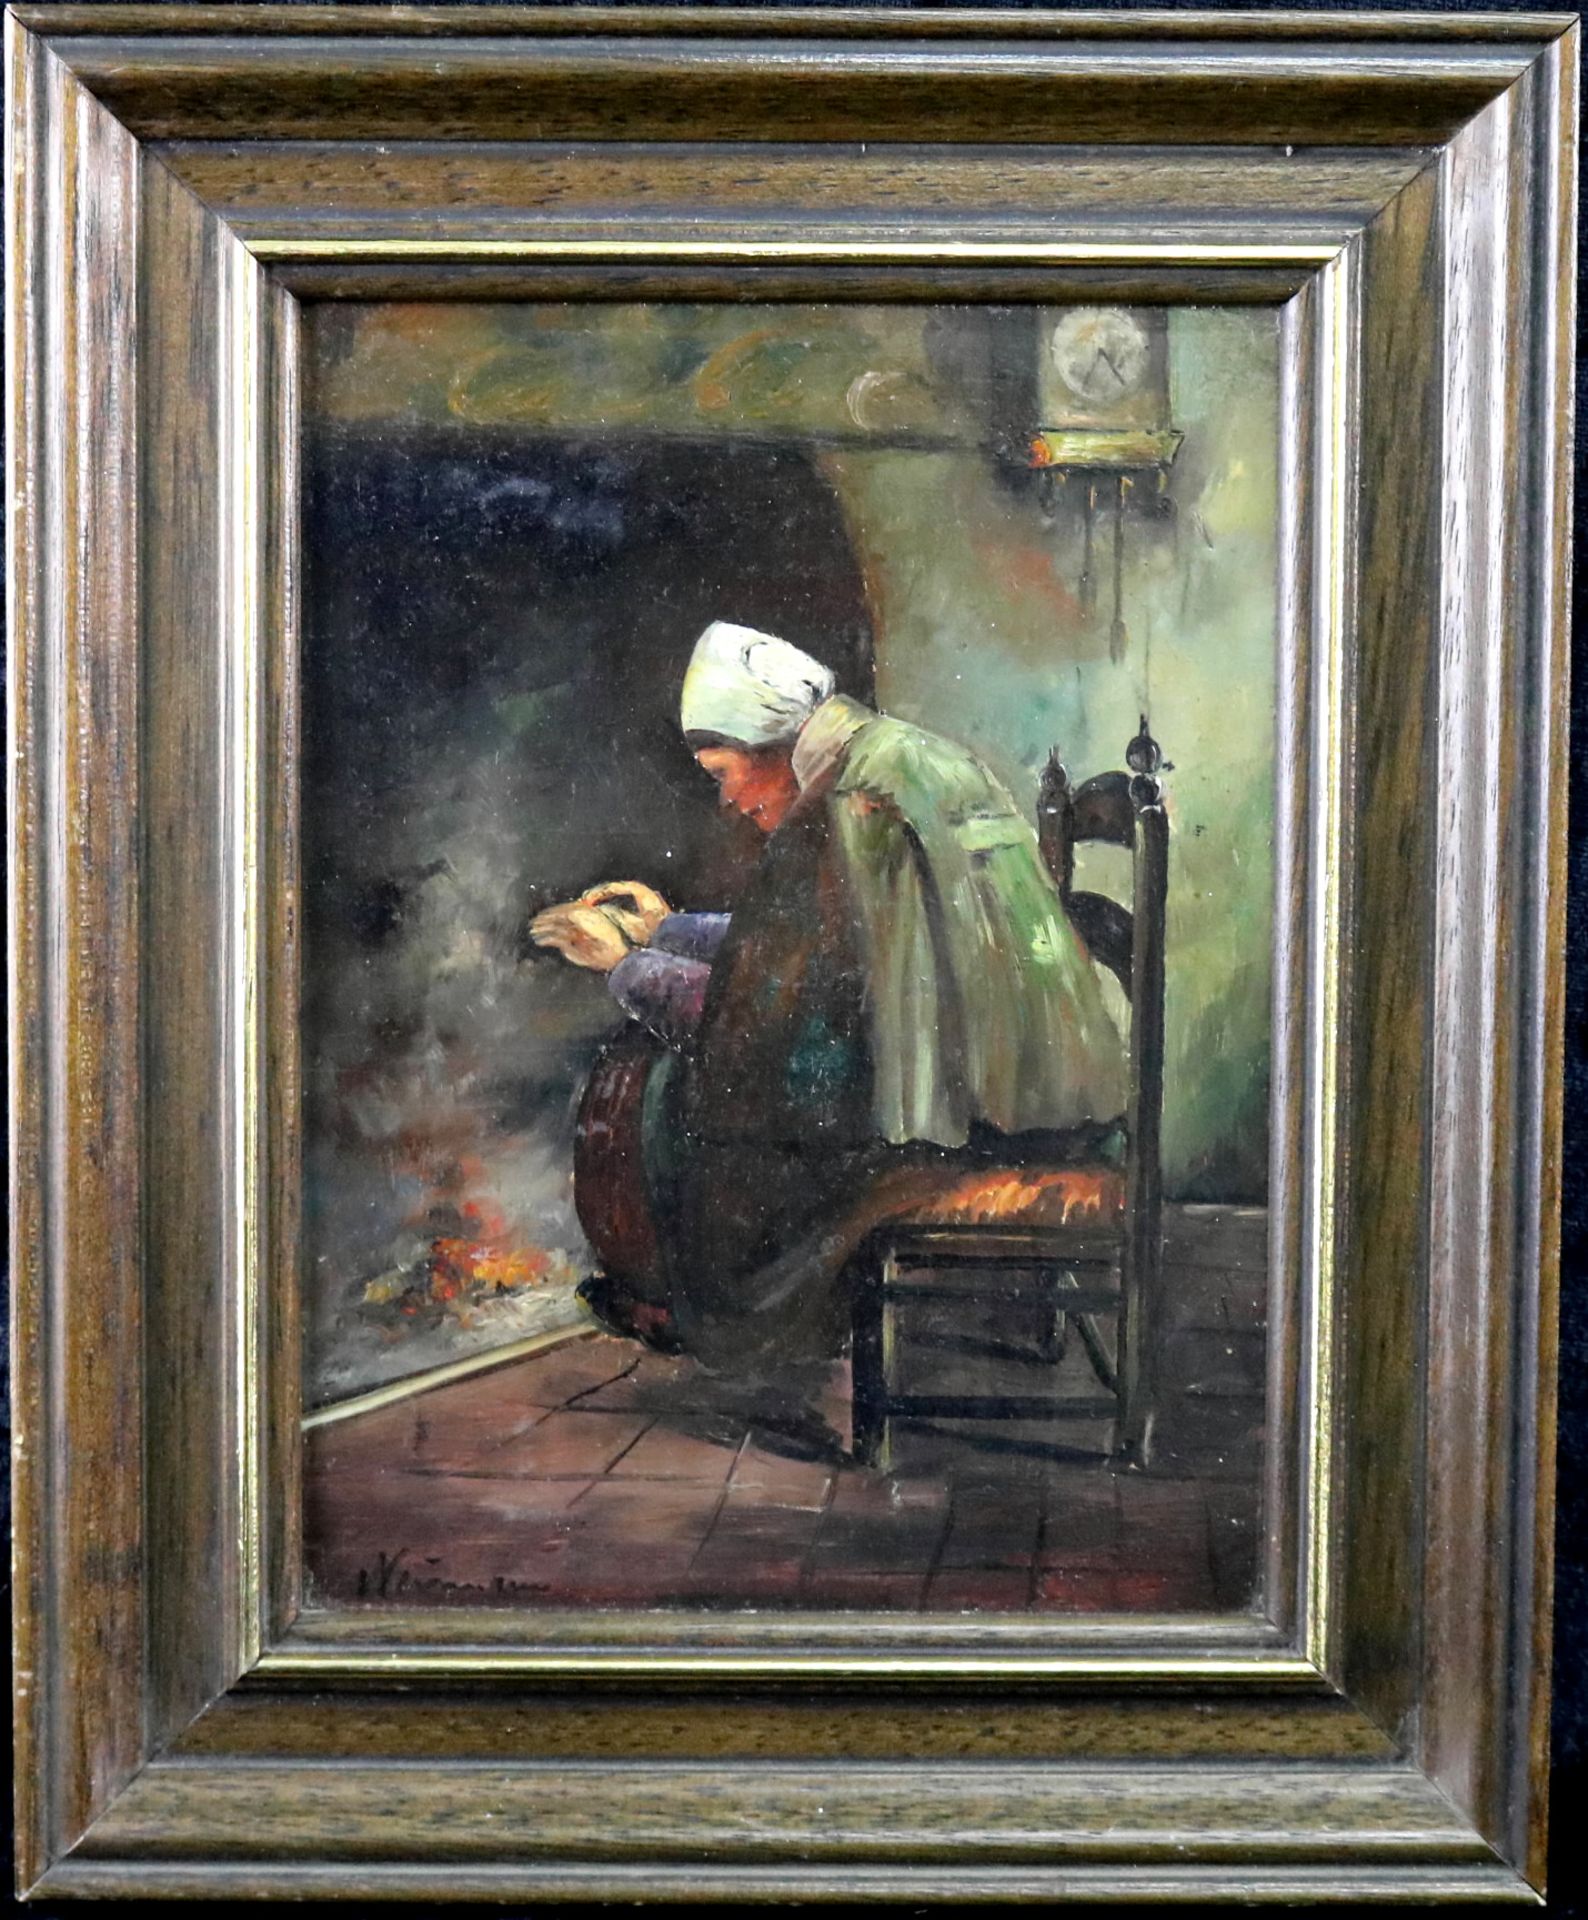 Arthur Neumann (*1873-?) "Frau am Kaminfeuer", sign., Öl/Leinwand, 24,5 x 18 cm